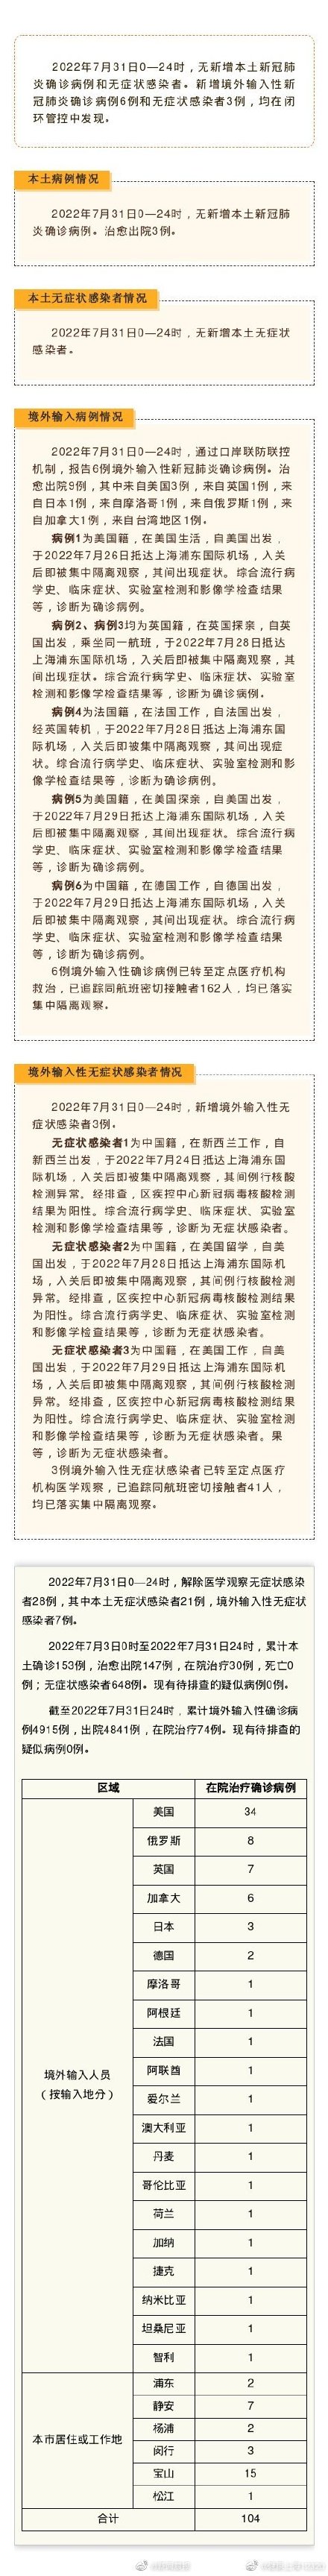 上海昨日无新增本土确诊病例、无新增本土无症状感染者